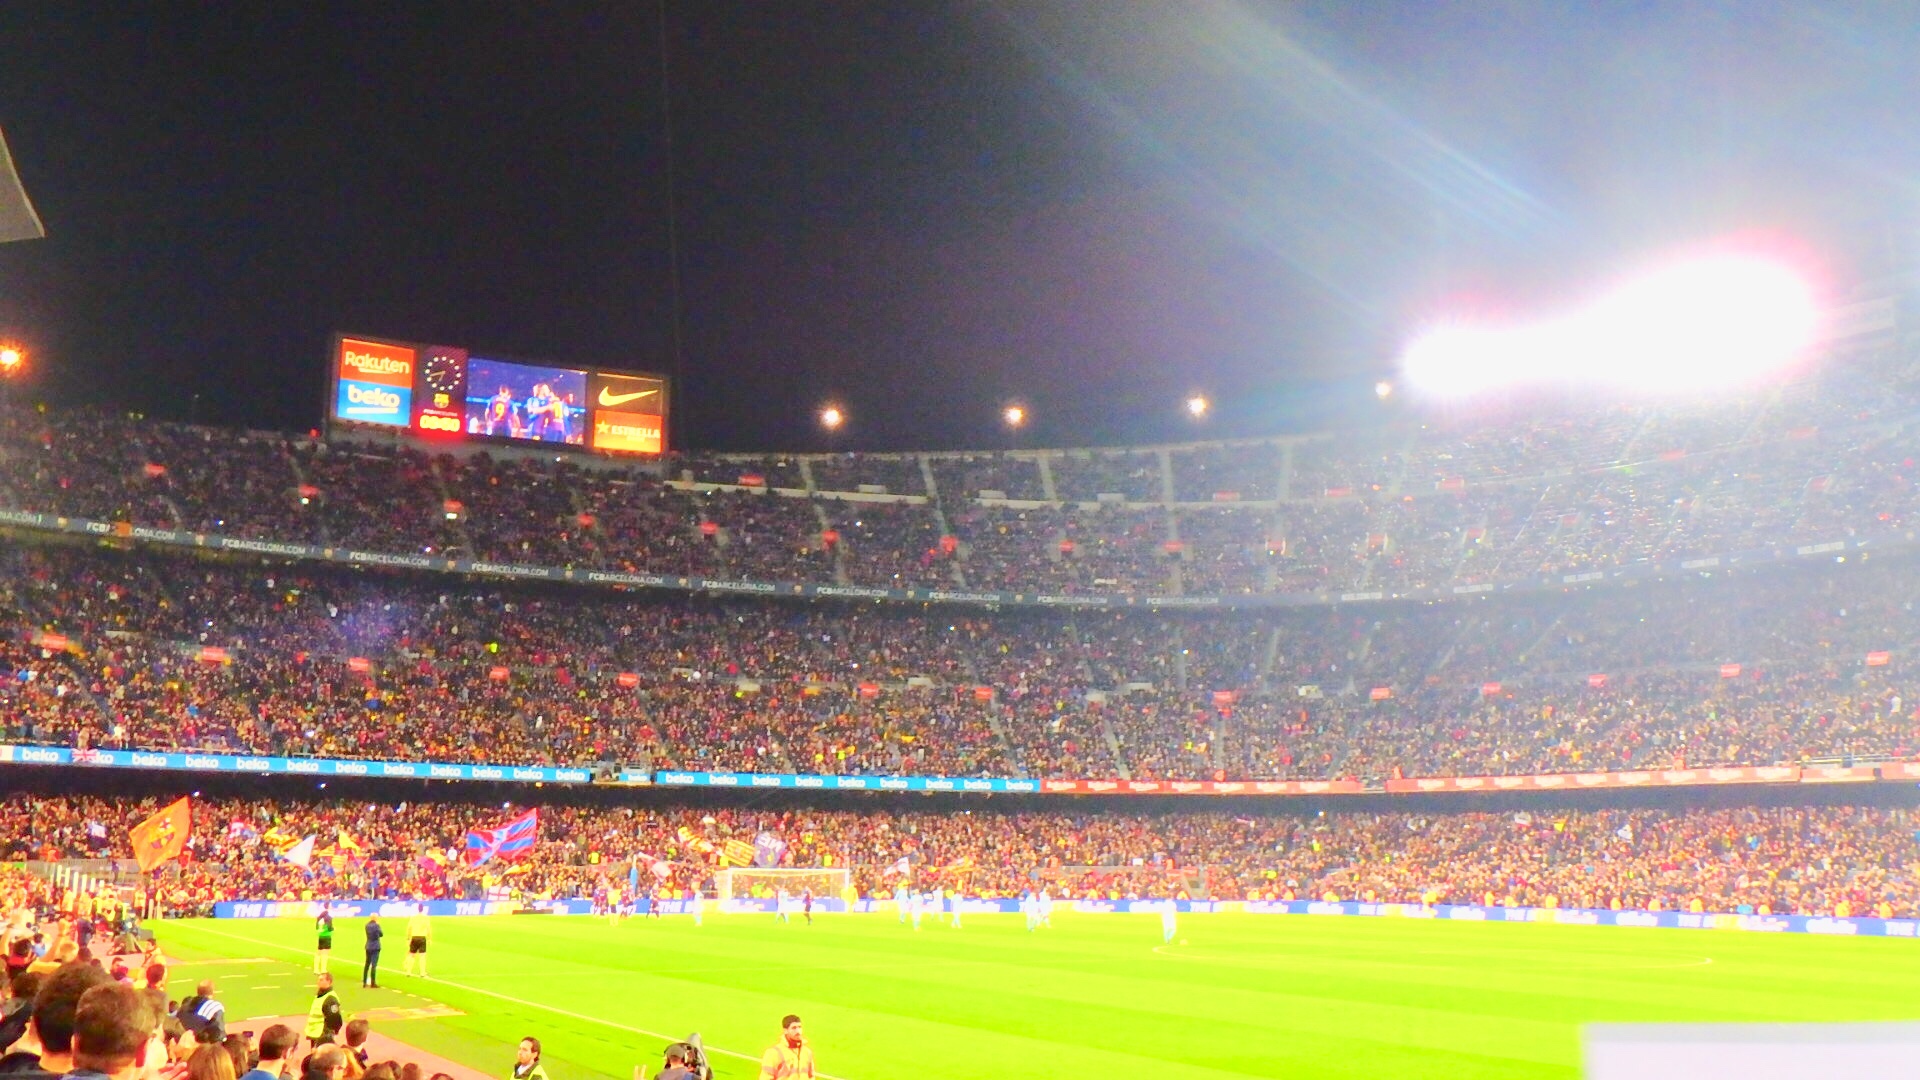 カンプノウスタジアムでfcバルセロナの試合観戦 スペイン旅ブログ 絶景in 国内 海外旅行記